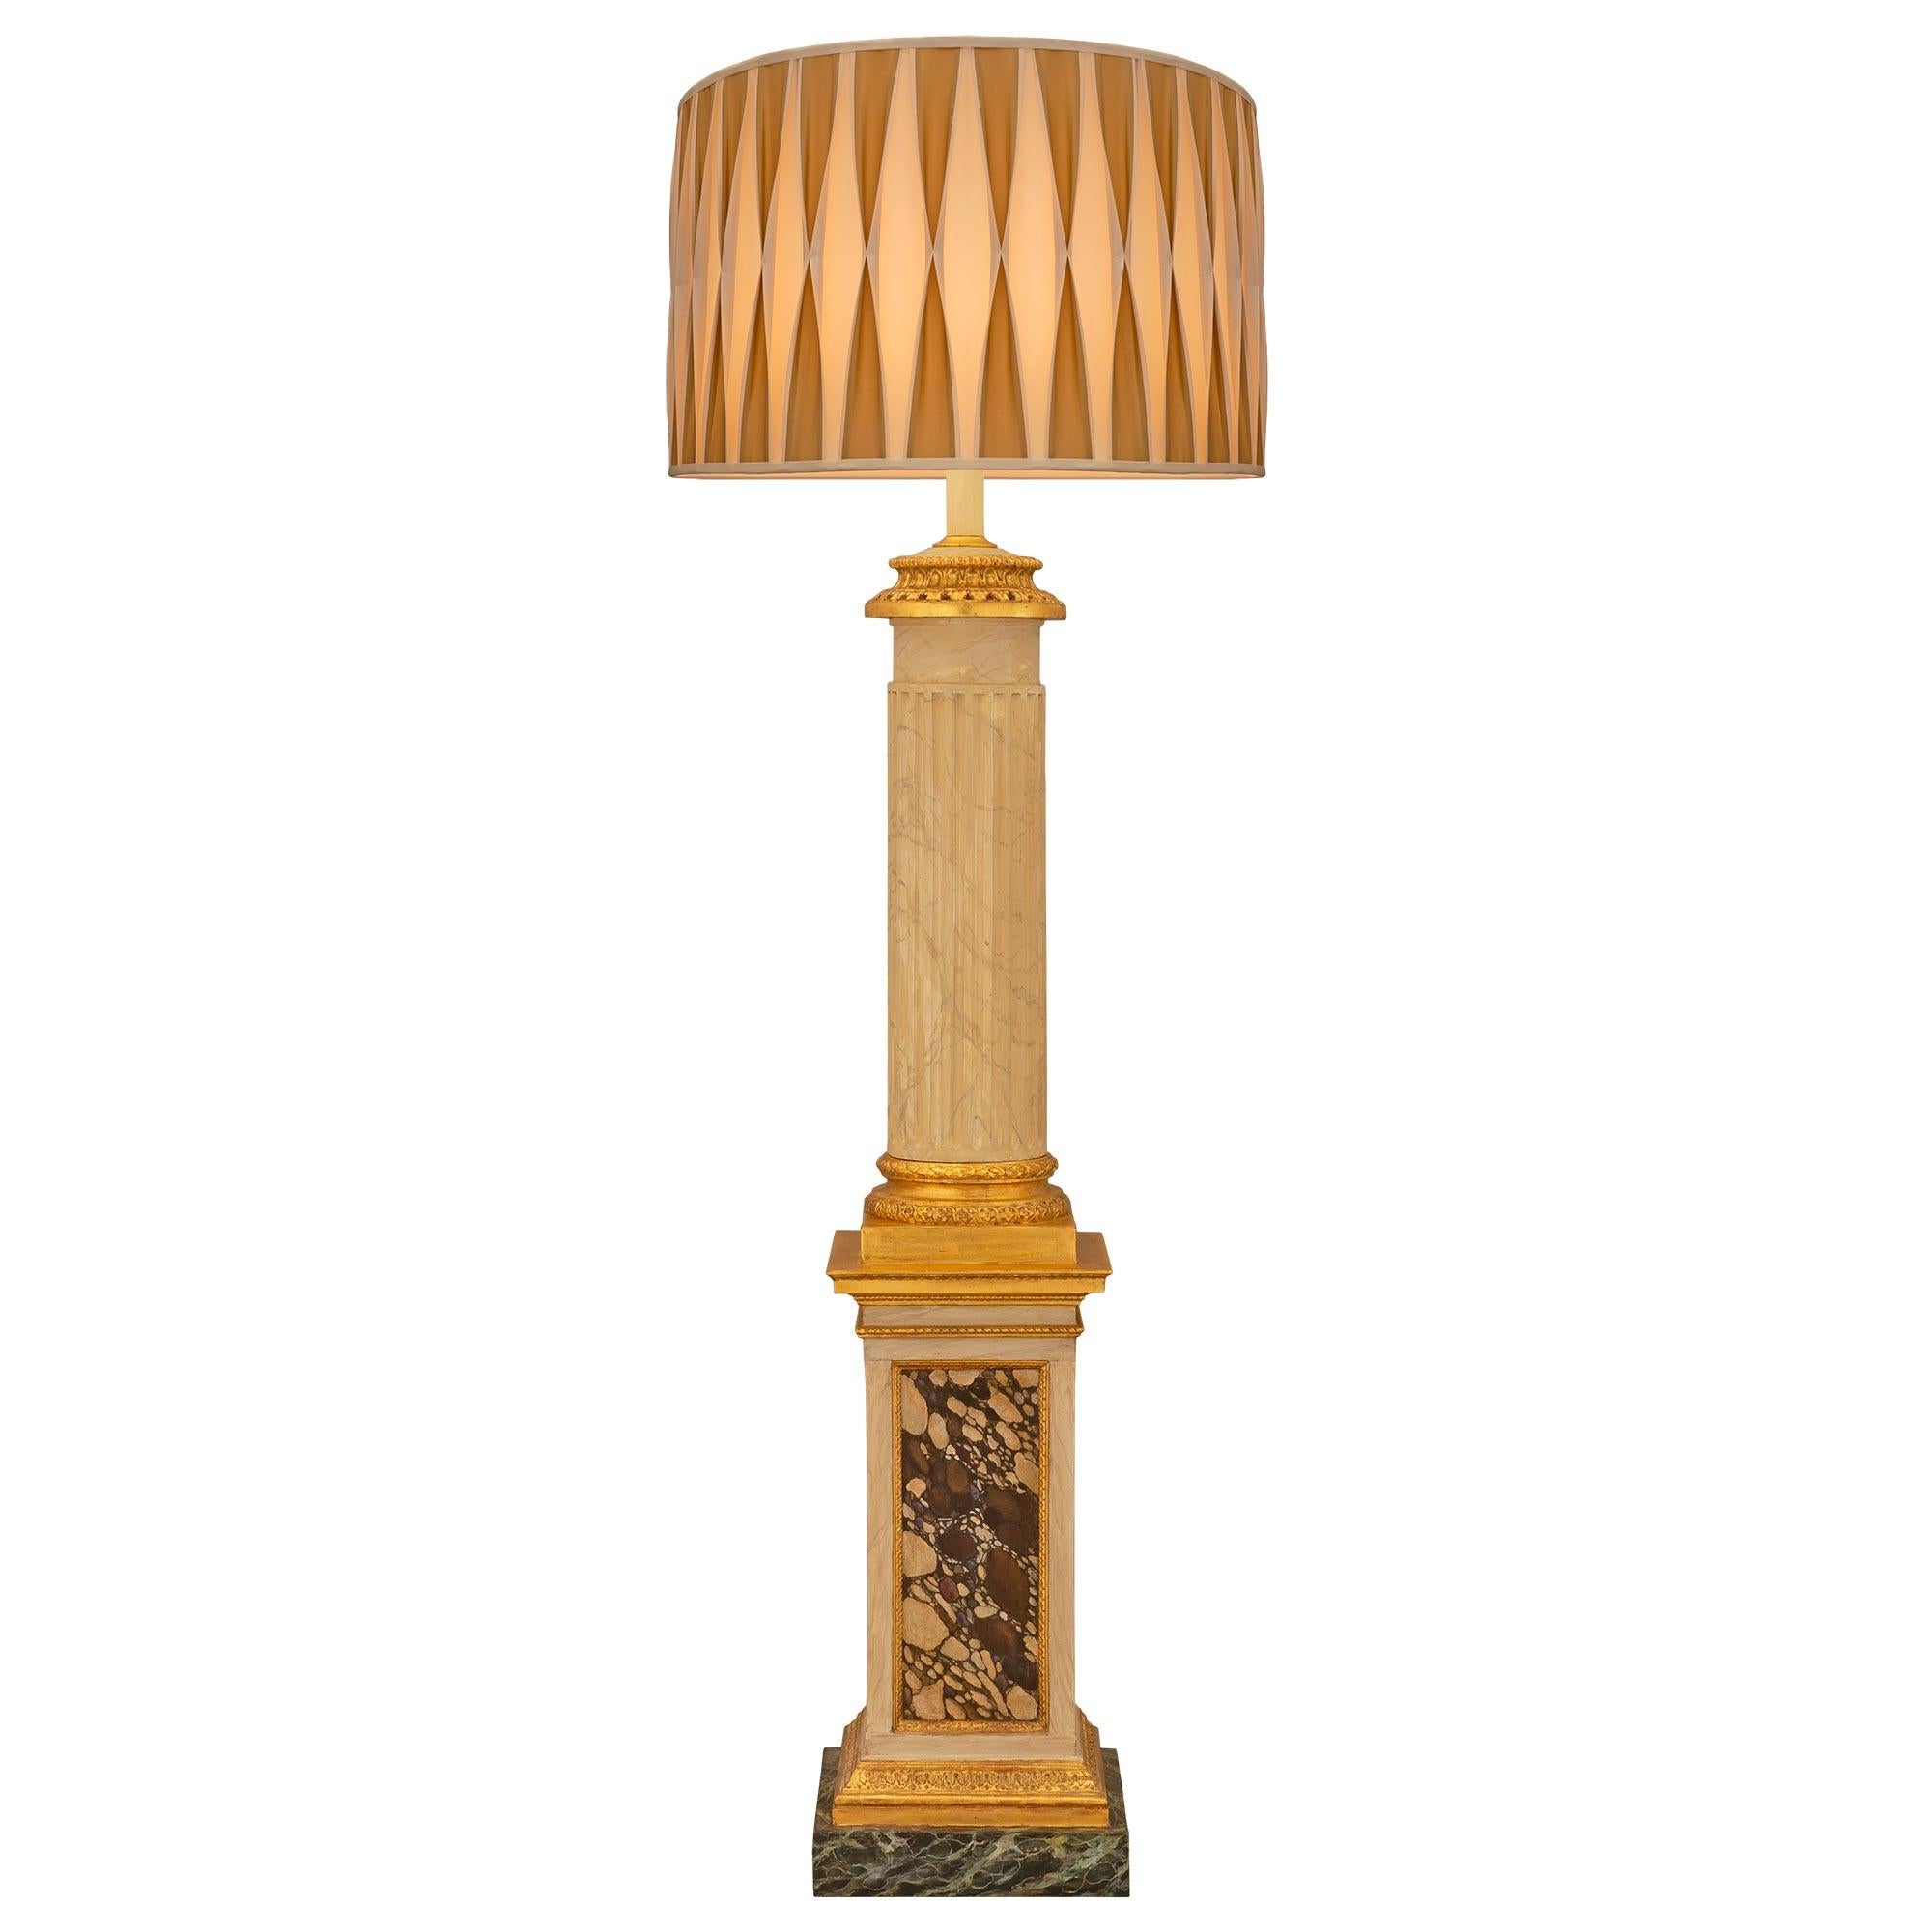 Eine beeindruckende italienische Stehlampe im neoklassischen Stil des 18. Jahrhunderts aus patiniertem Holz, vergoldetem Holz und künstlich bemaltem Marmor. Die Stehlampe wird von einem schönen quadratischen Sockel aus lackiertem Verde Antico-Marmor